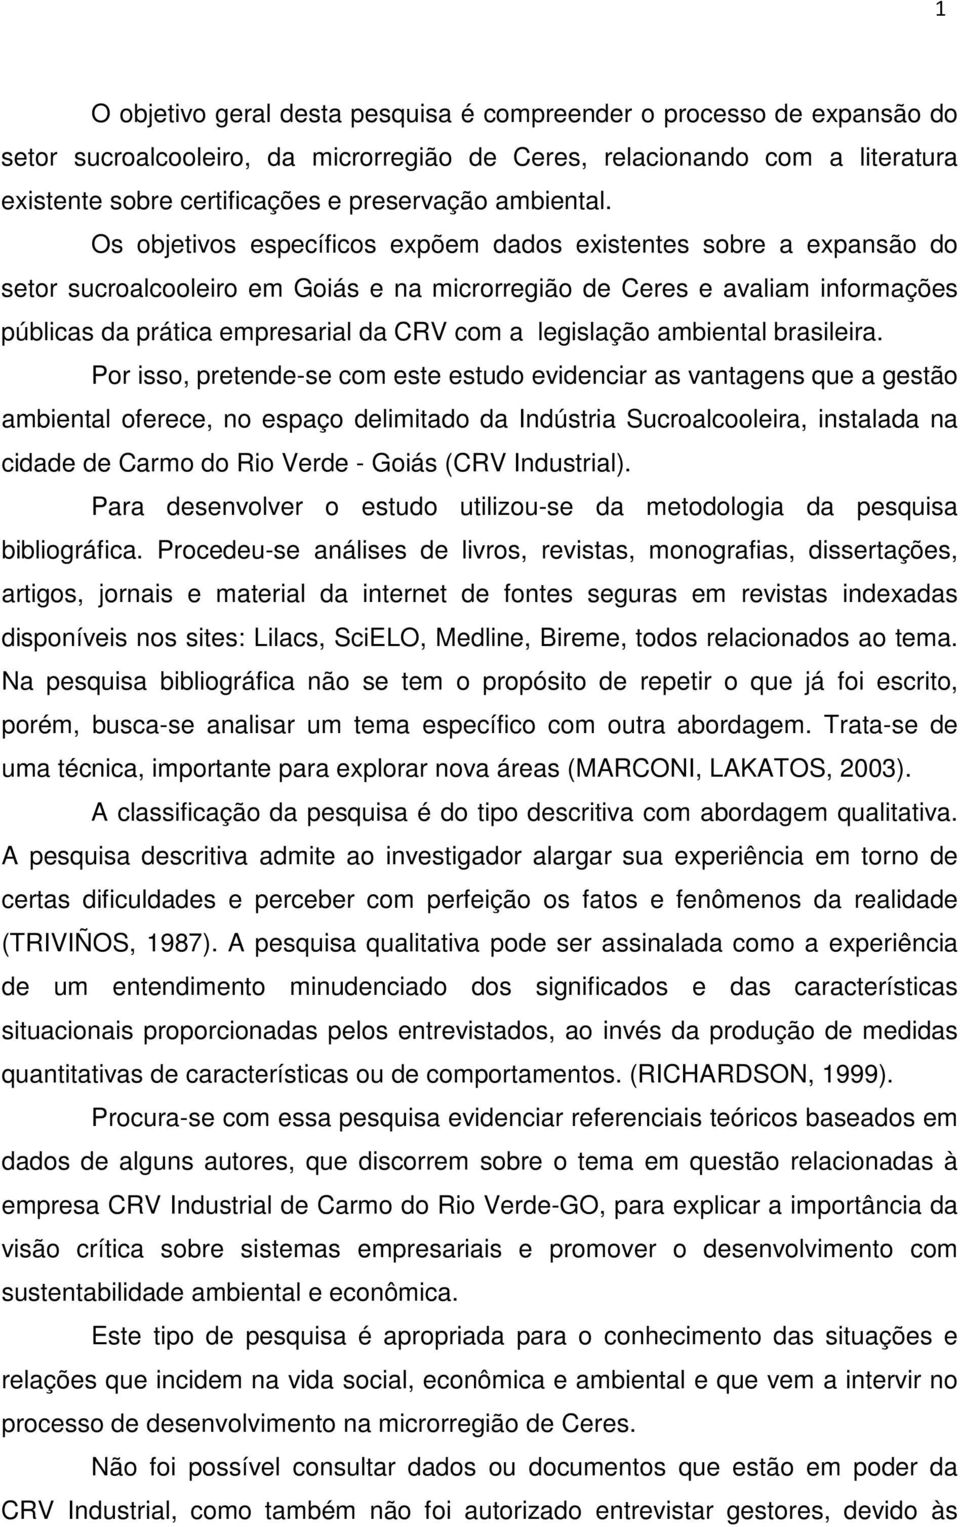 Os objetivos específicos expõem dados existentes sobre a expansão do setor sucroalcooleiro em Goiás e na microrregião de Ceres e avaliam informações públicas da prática empresarial da CRV com a